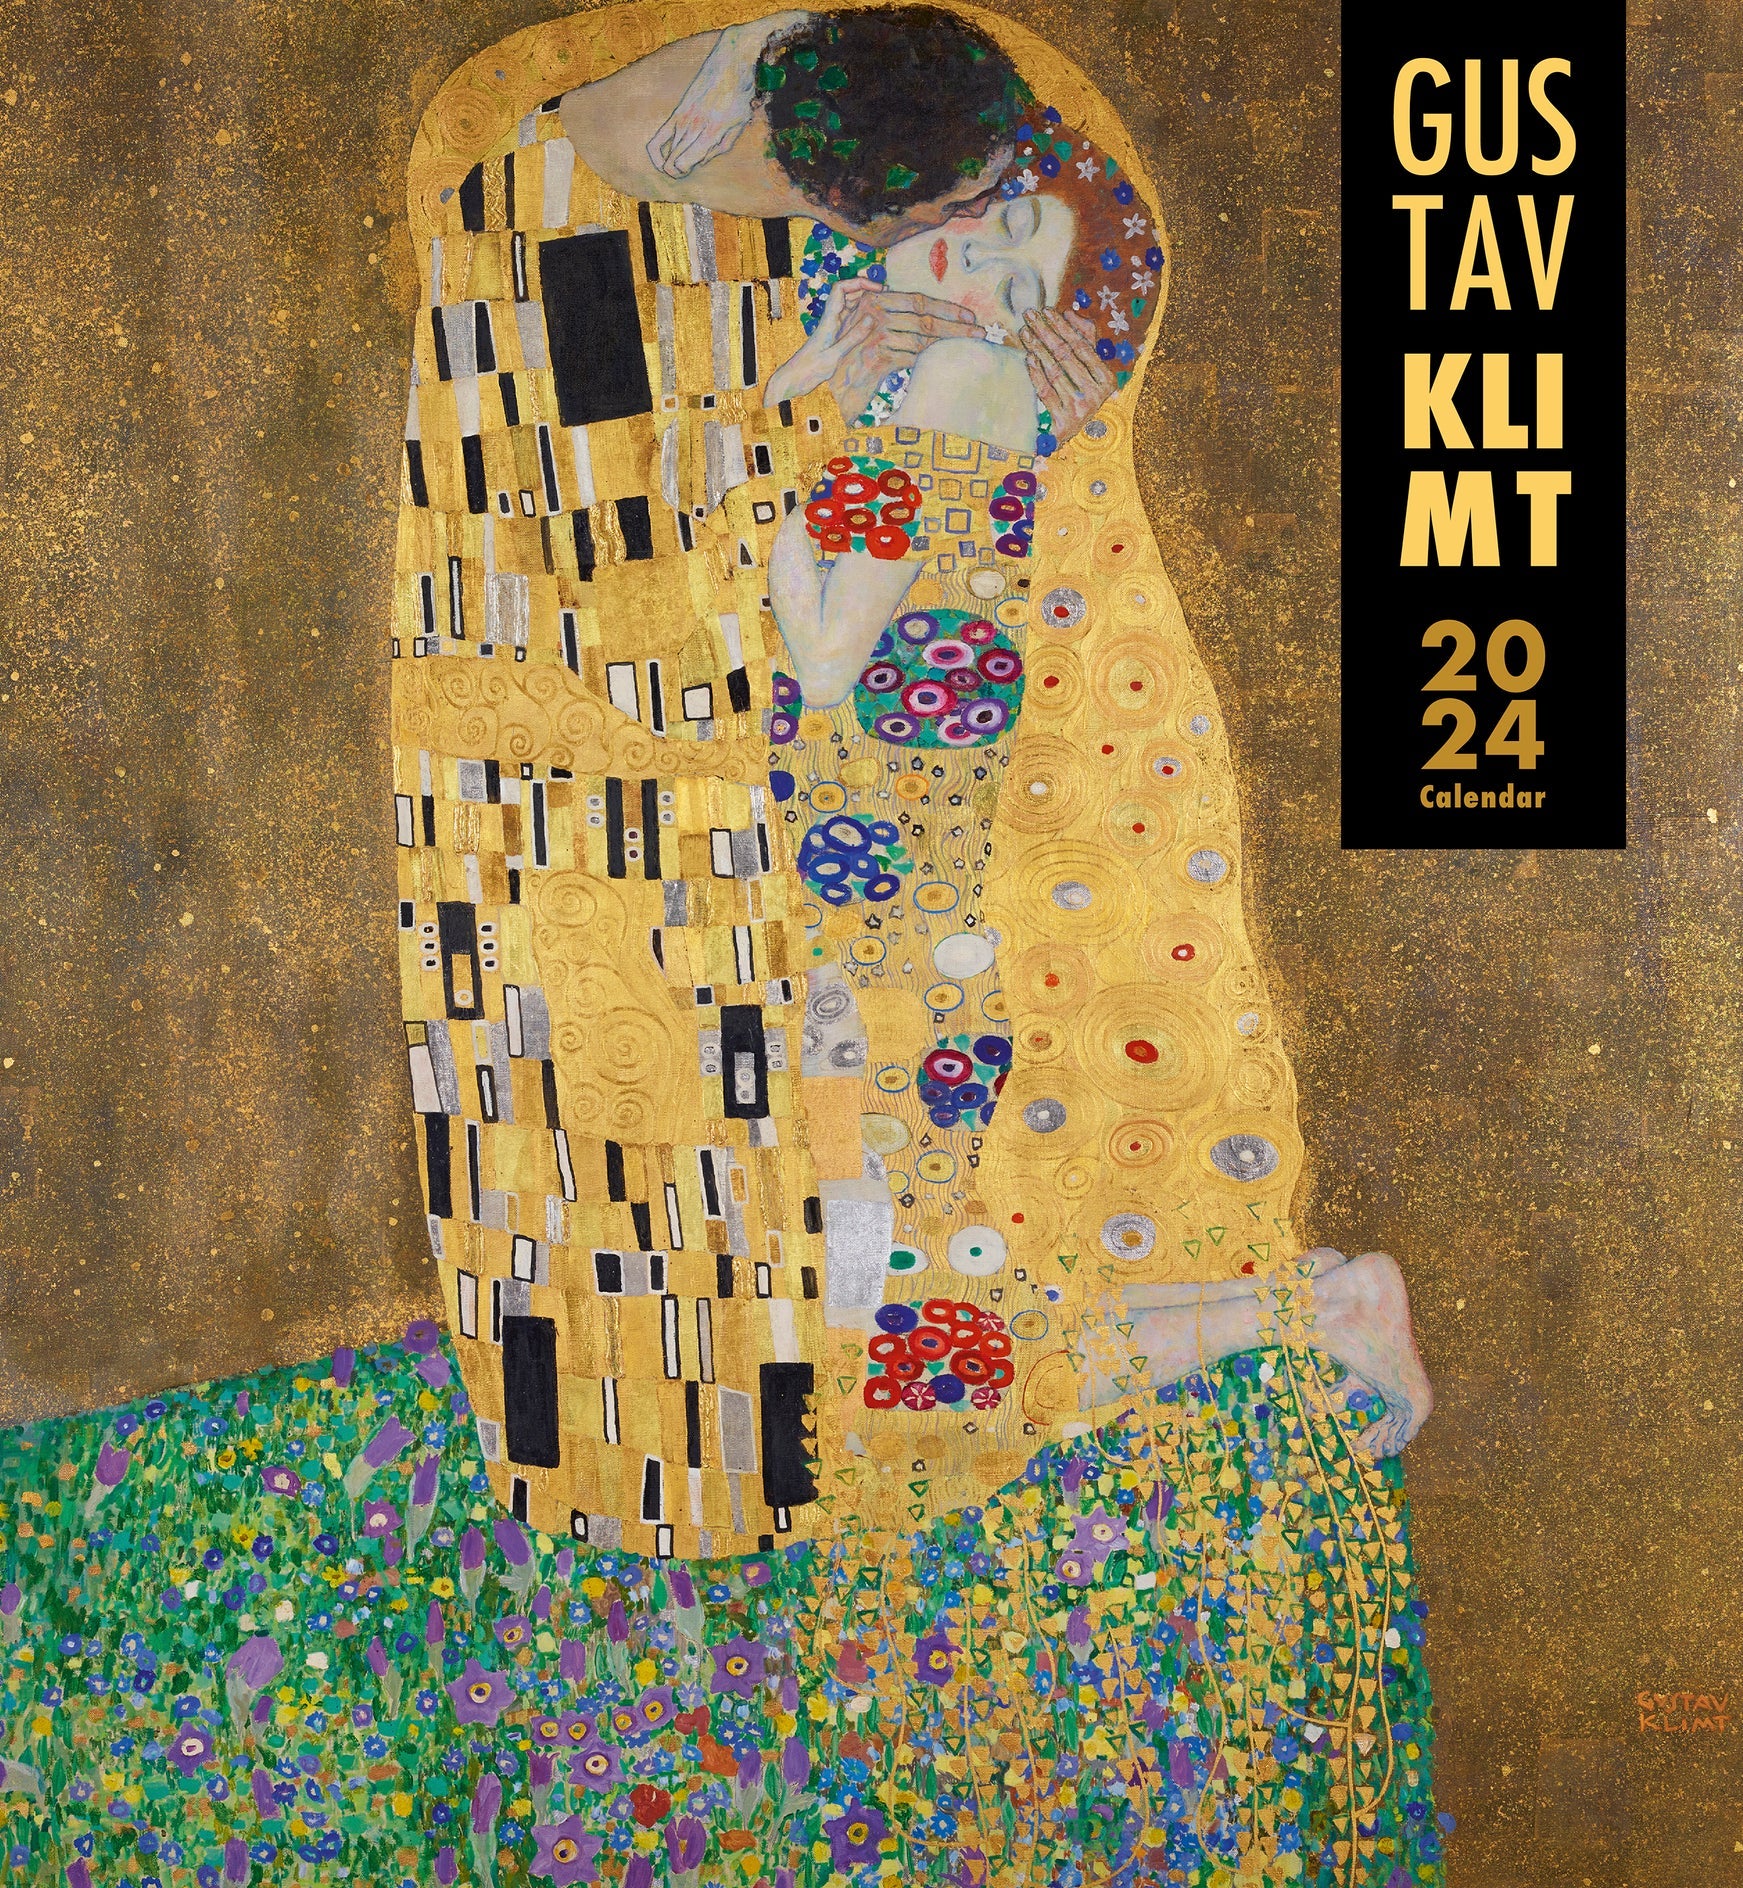 Gustav Klimt Wall Calendar